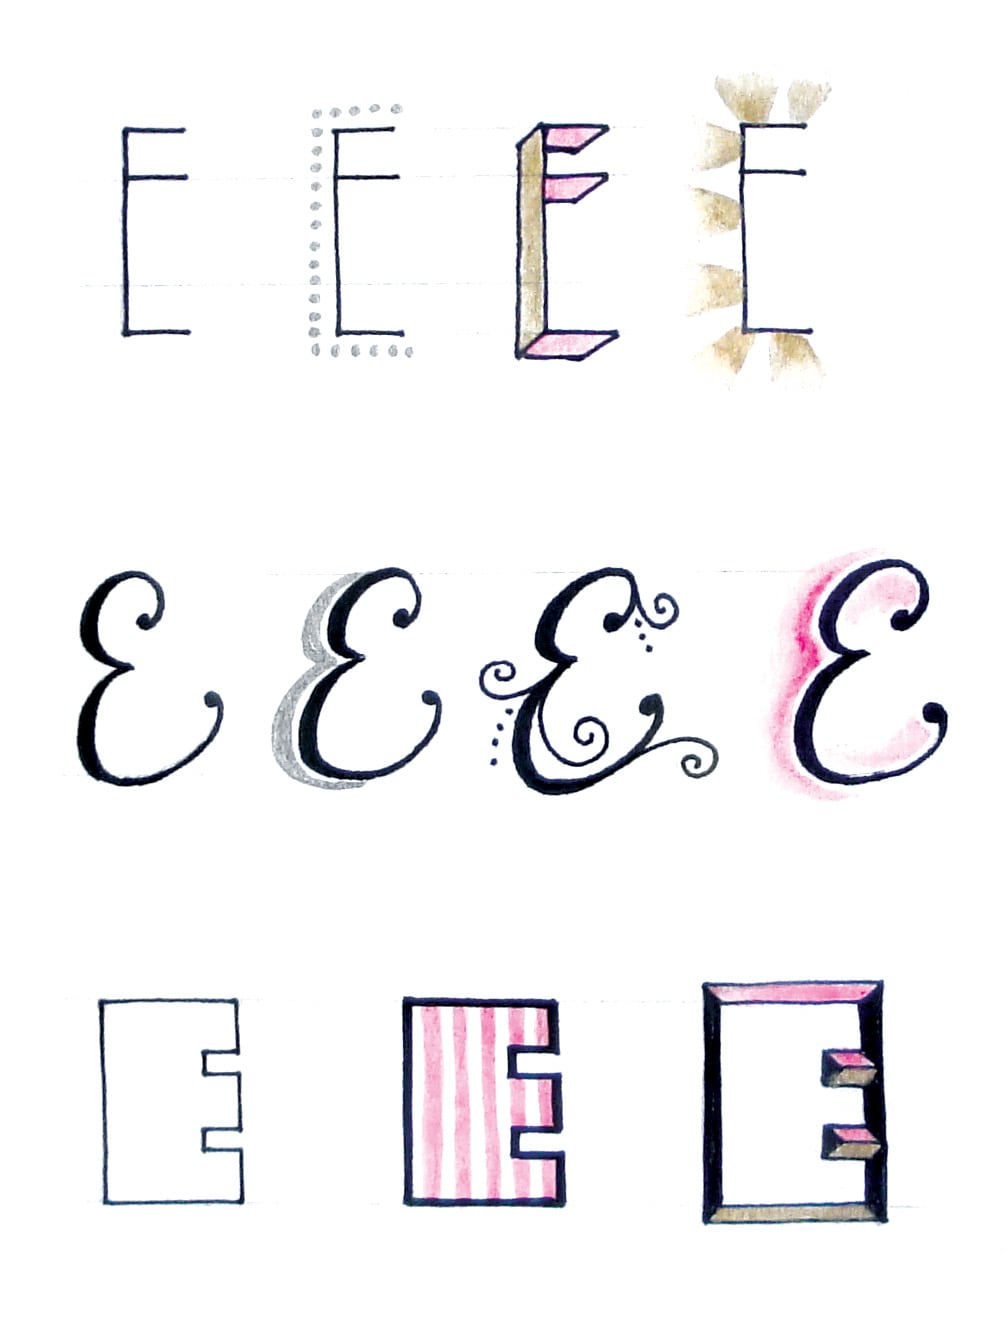 Faber-Castell Modern Calligraphy Kit - Lettering Set for Beginners